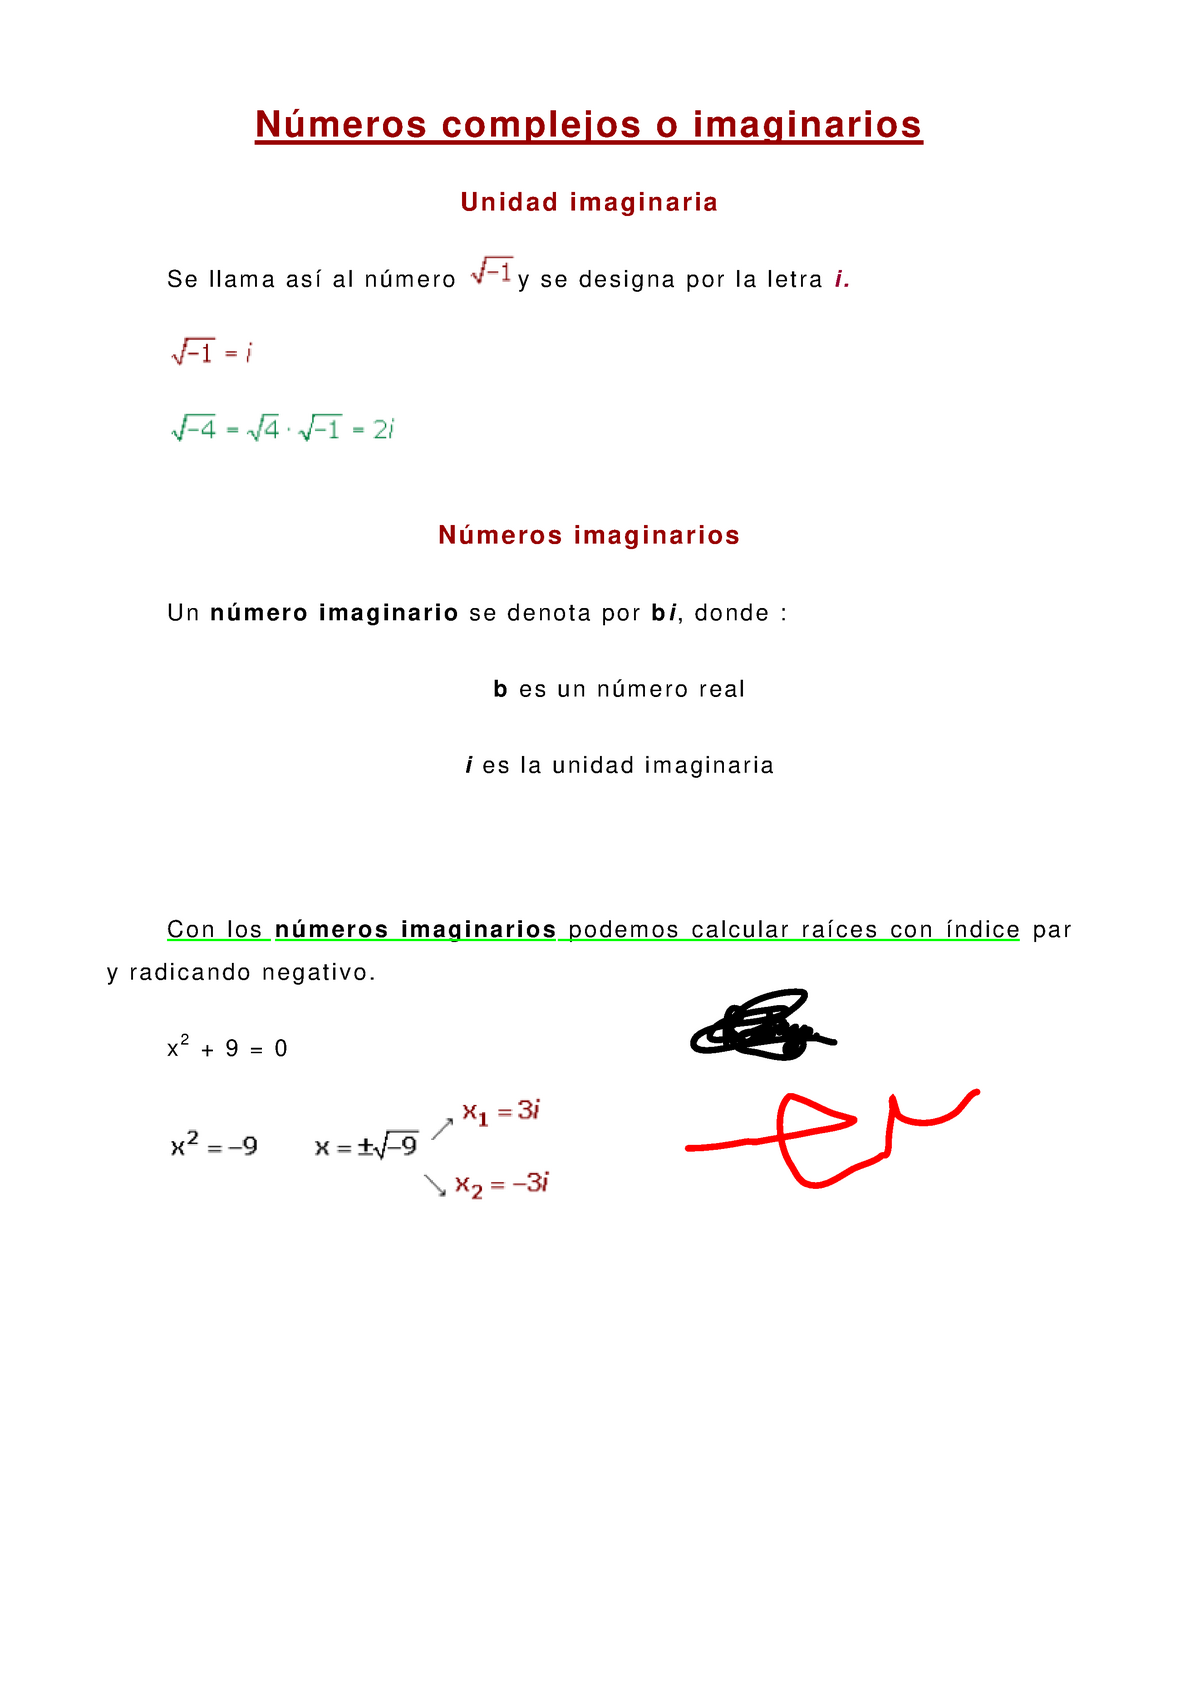 Apuntes Numeros Complejos O Imaginarios Algebra I 16391 Studocu